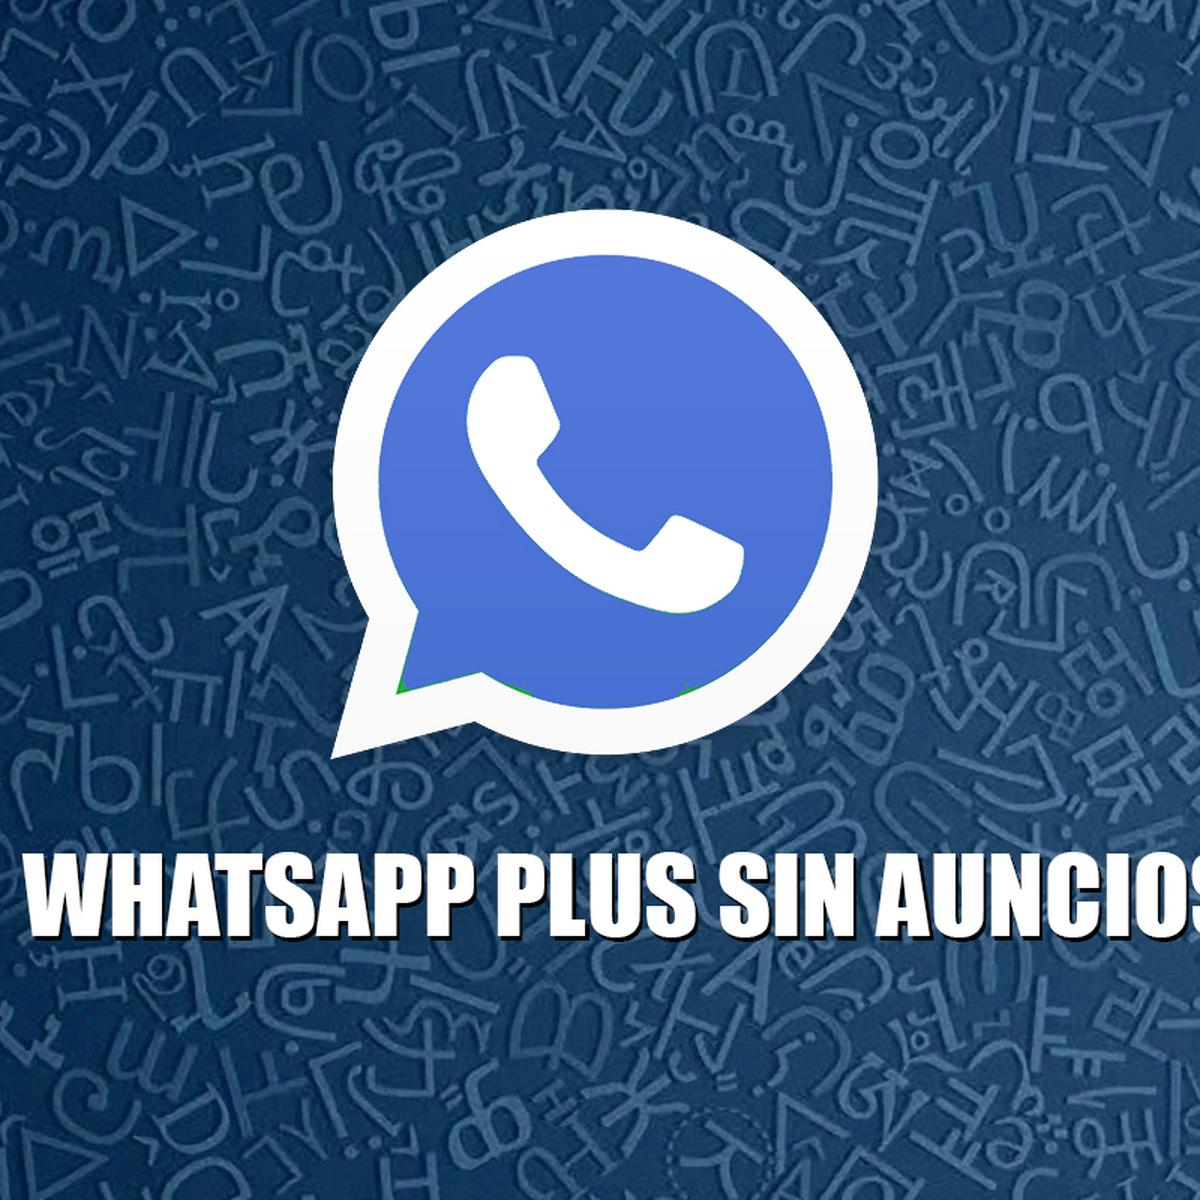 WhatsApp Plus V40.24: pasos para descargar la última versión del APK